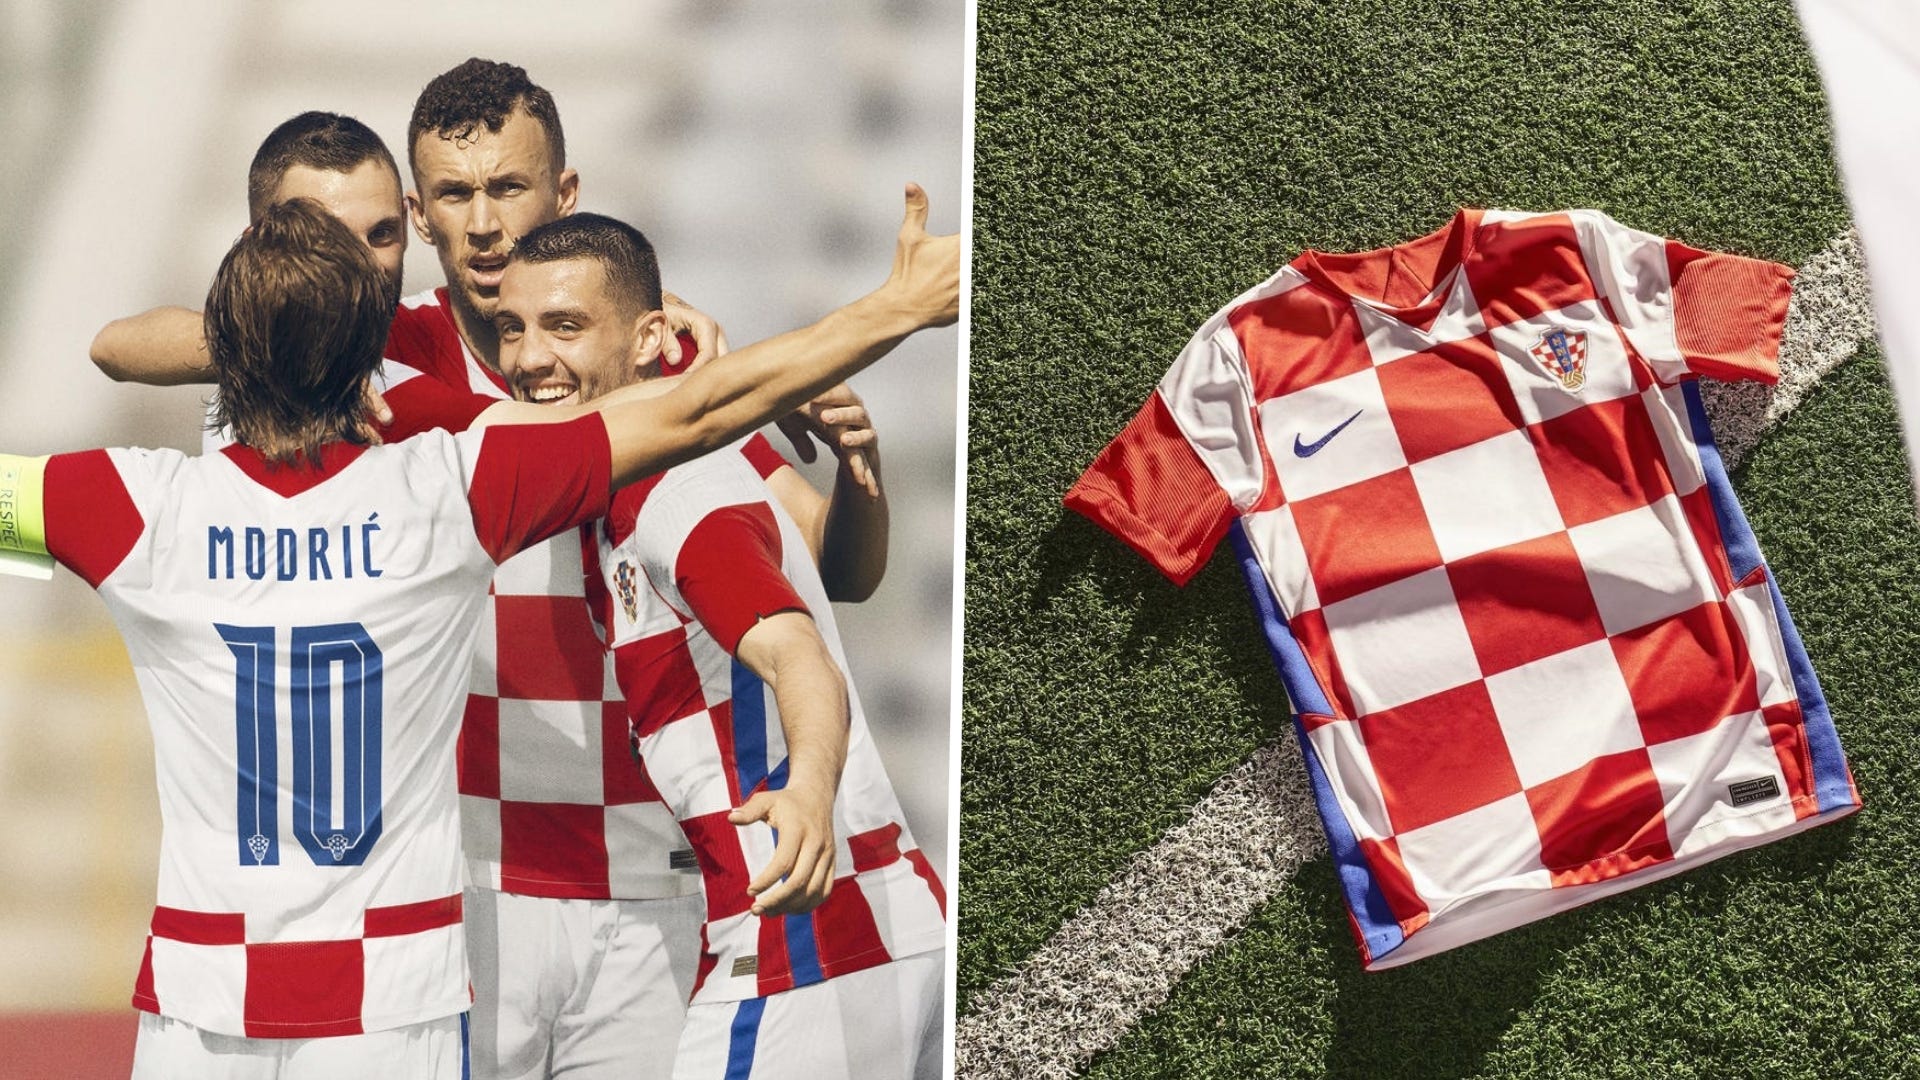 Croatia Euro 2020 home kit